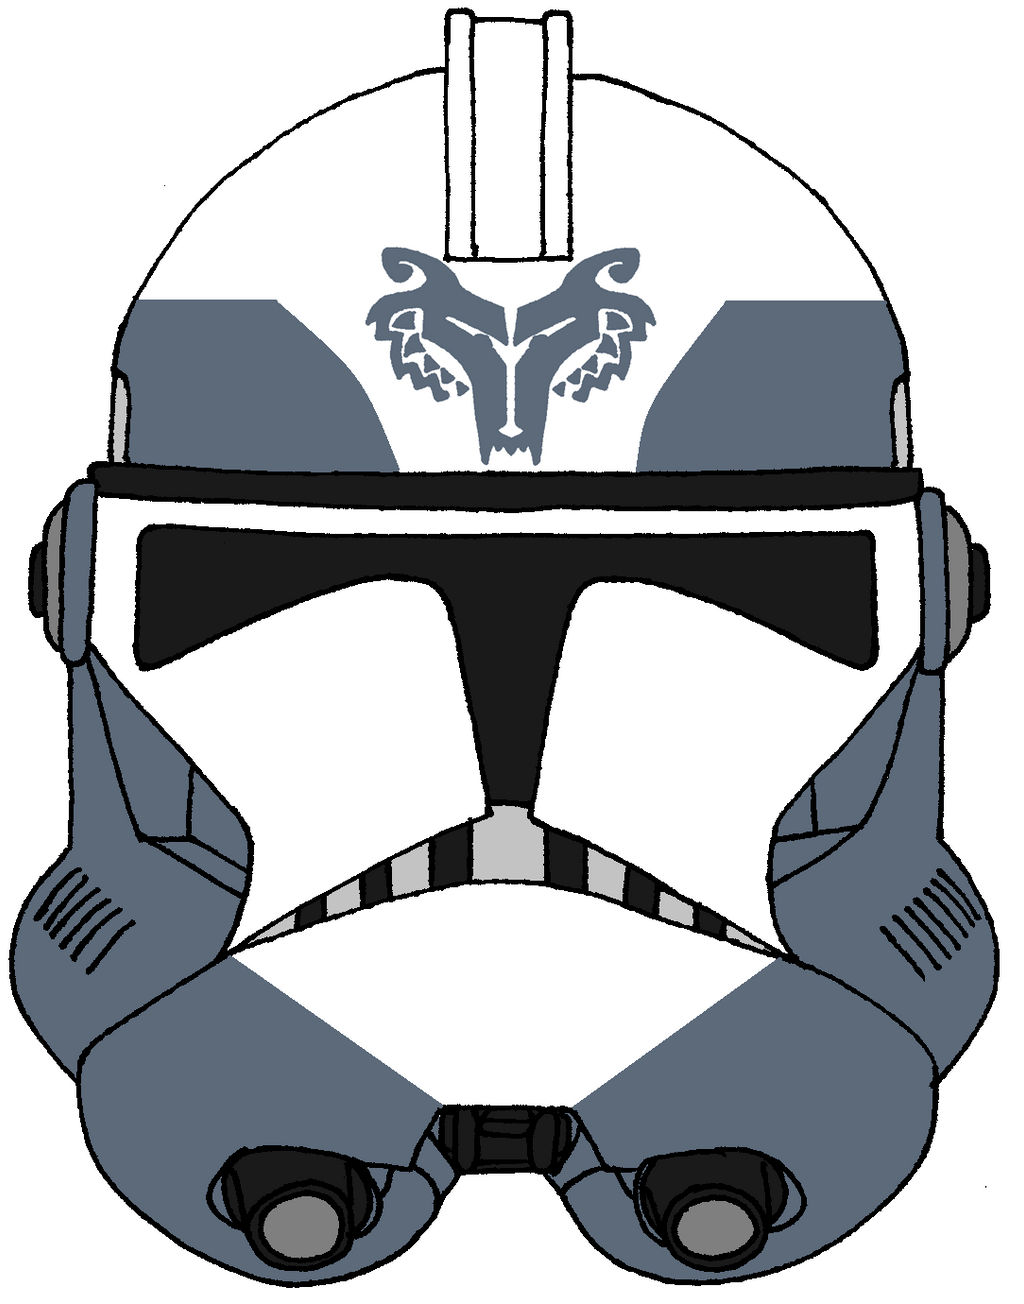 Clone Trooper Sinker\'s Helmet 3 by historymaker1986 on DeviantArt